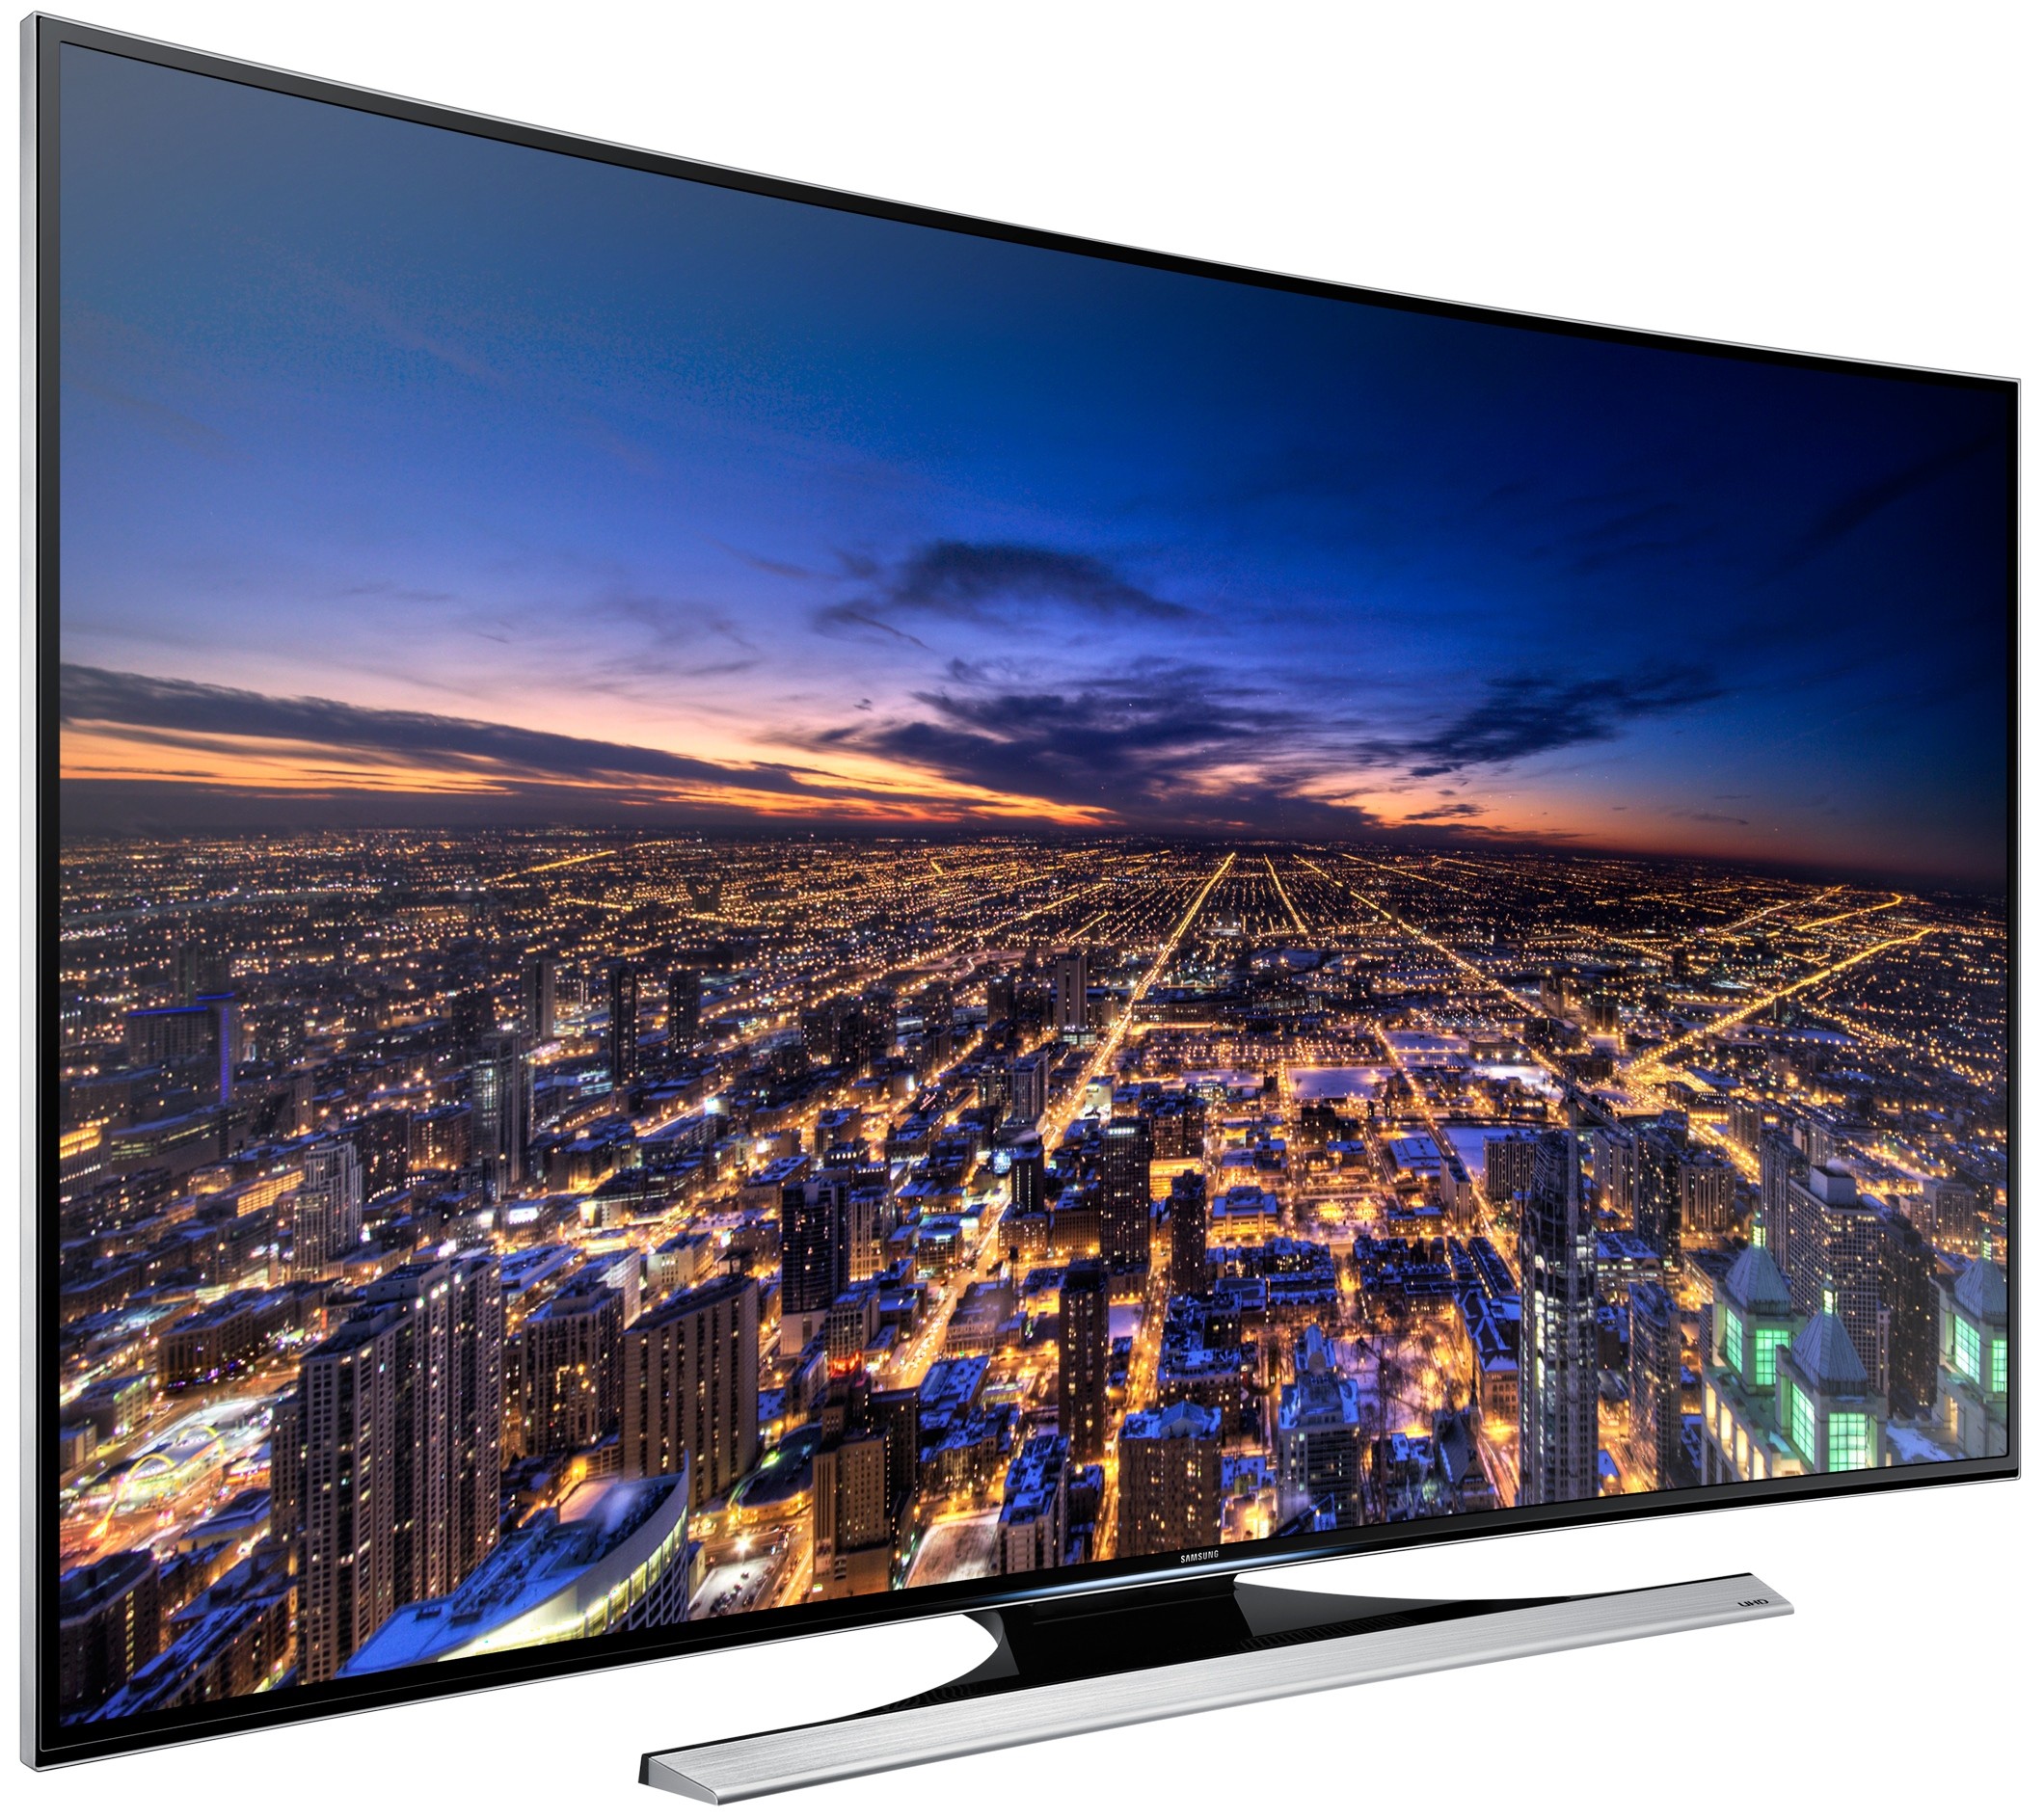 Телевизоры самсунг краснодар. Samsung ue65hu8700t. Телевизор самсунг ue55hu8700t. ТВ самсунг 55. Samsung led 55 Smart TV.